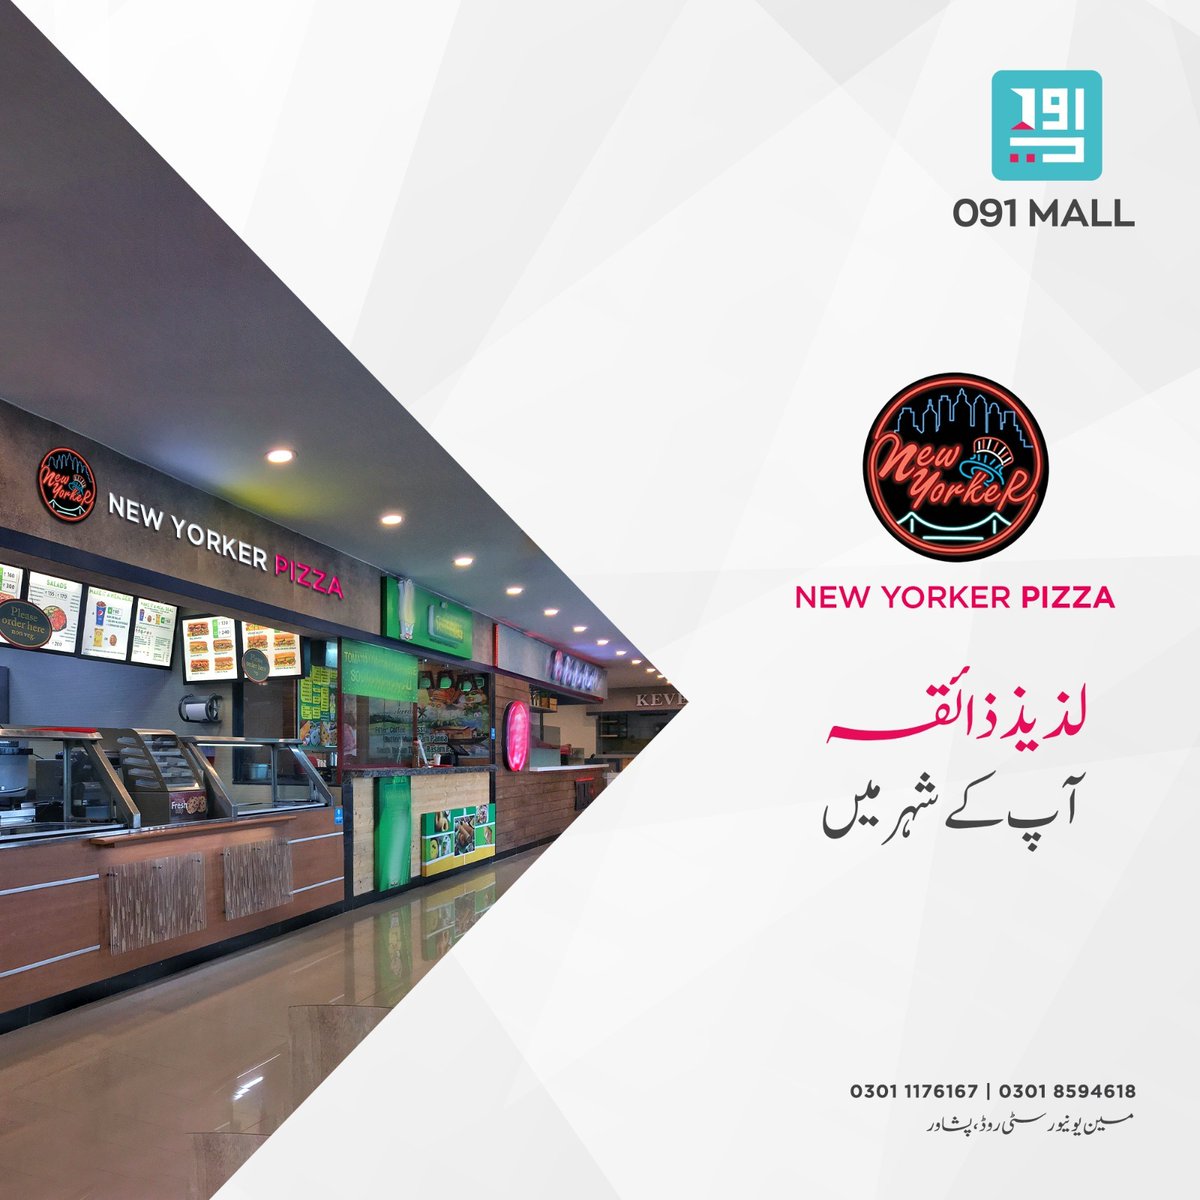 091 مال کے فوڈ کورٹ  میں ملے گی آپ کو ذائقوں کی دنیا کیونکہ
New Yorker Pizza   انٹرنیشنل برانڈ
بن گیا ہے حصہ پشاور کے سب سے لگژری مال کا۔

#091Mall #ShoppingMall #UniversityRoadPeshawar #peshawar #KPK